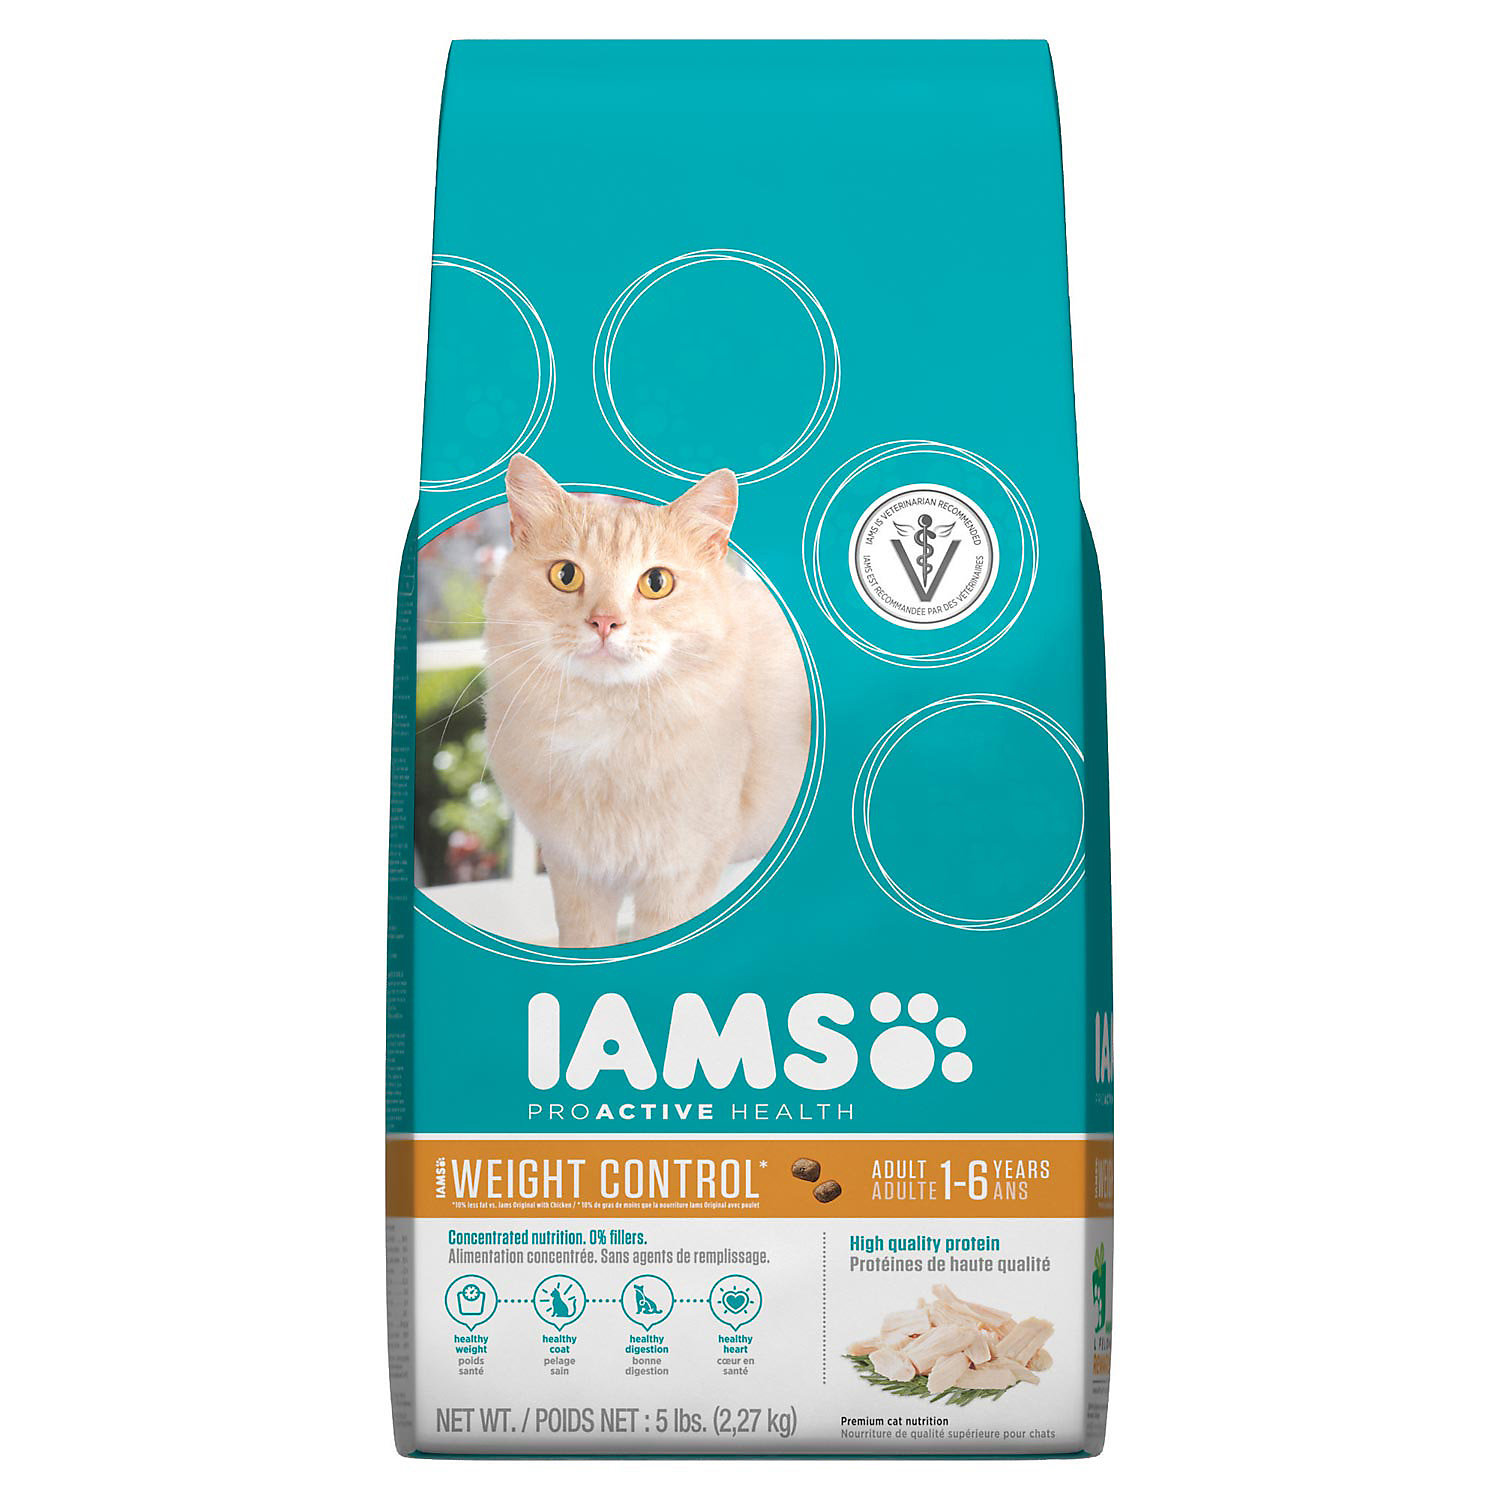 Ямс корм для кошек. Супер премиум корма для кошек. Гипоаллергенные и натуральные корма для кошек. Лучший корм для кошек.